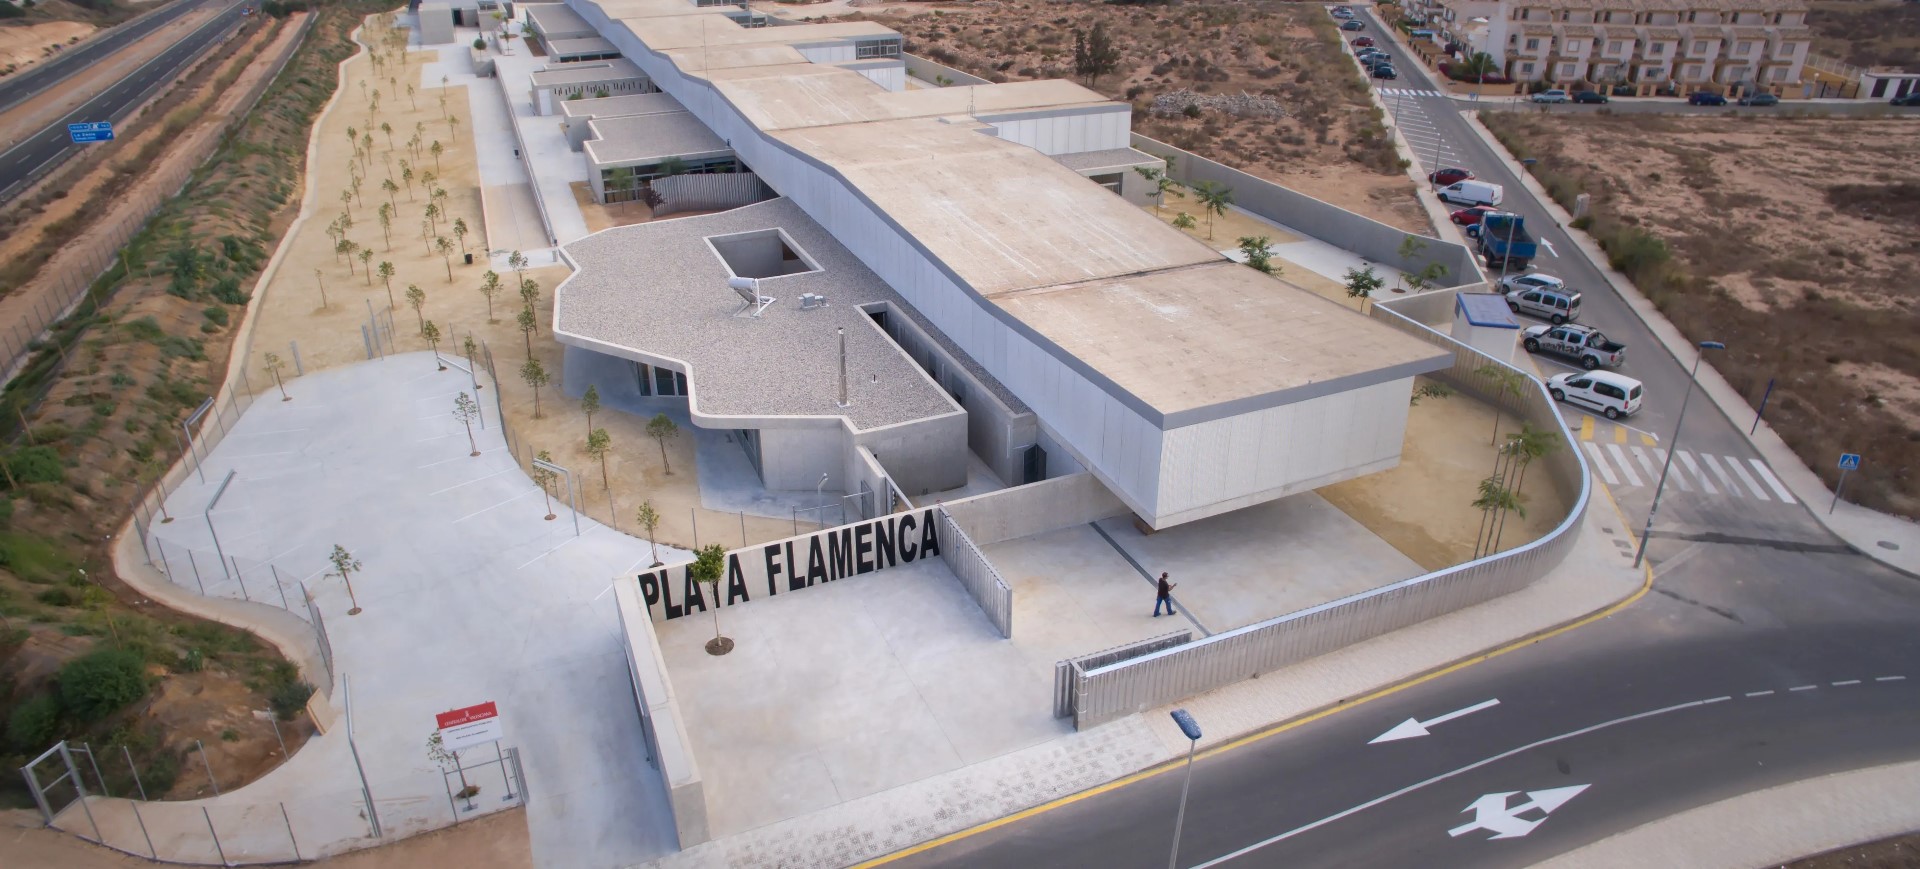 IES Playa Flamenca - Eiffage Infraestructuras